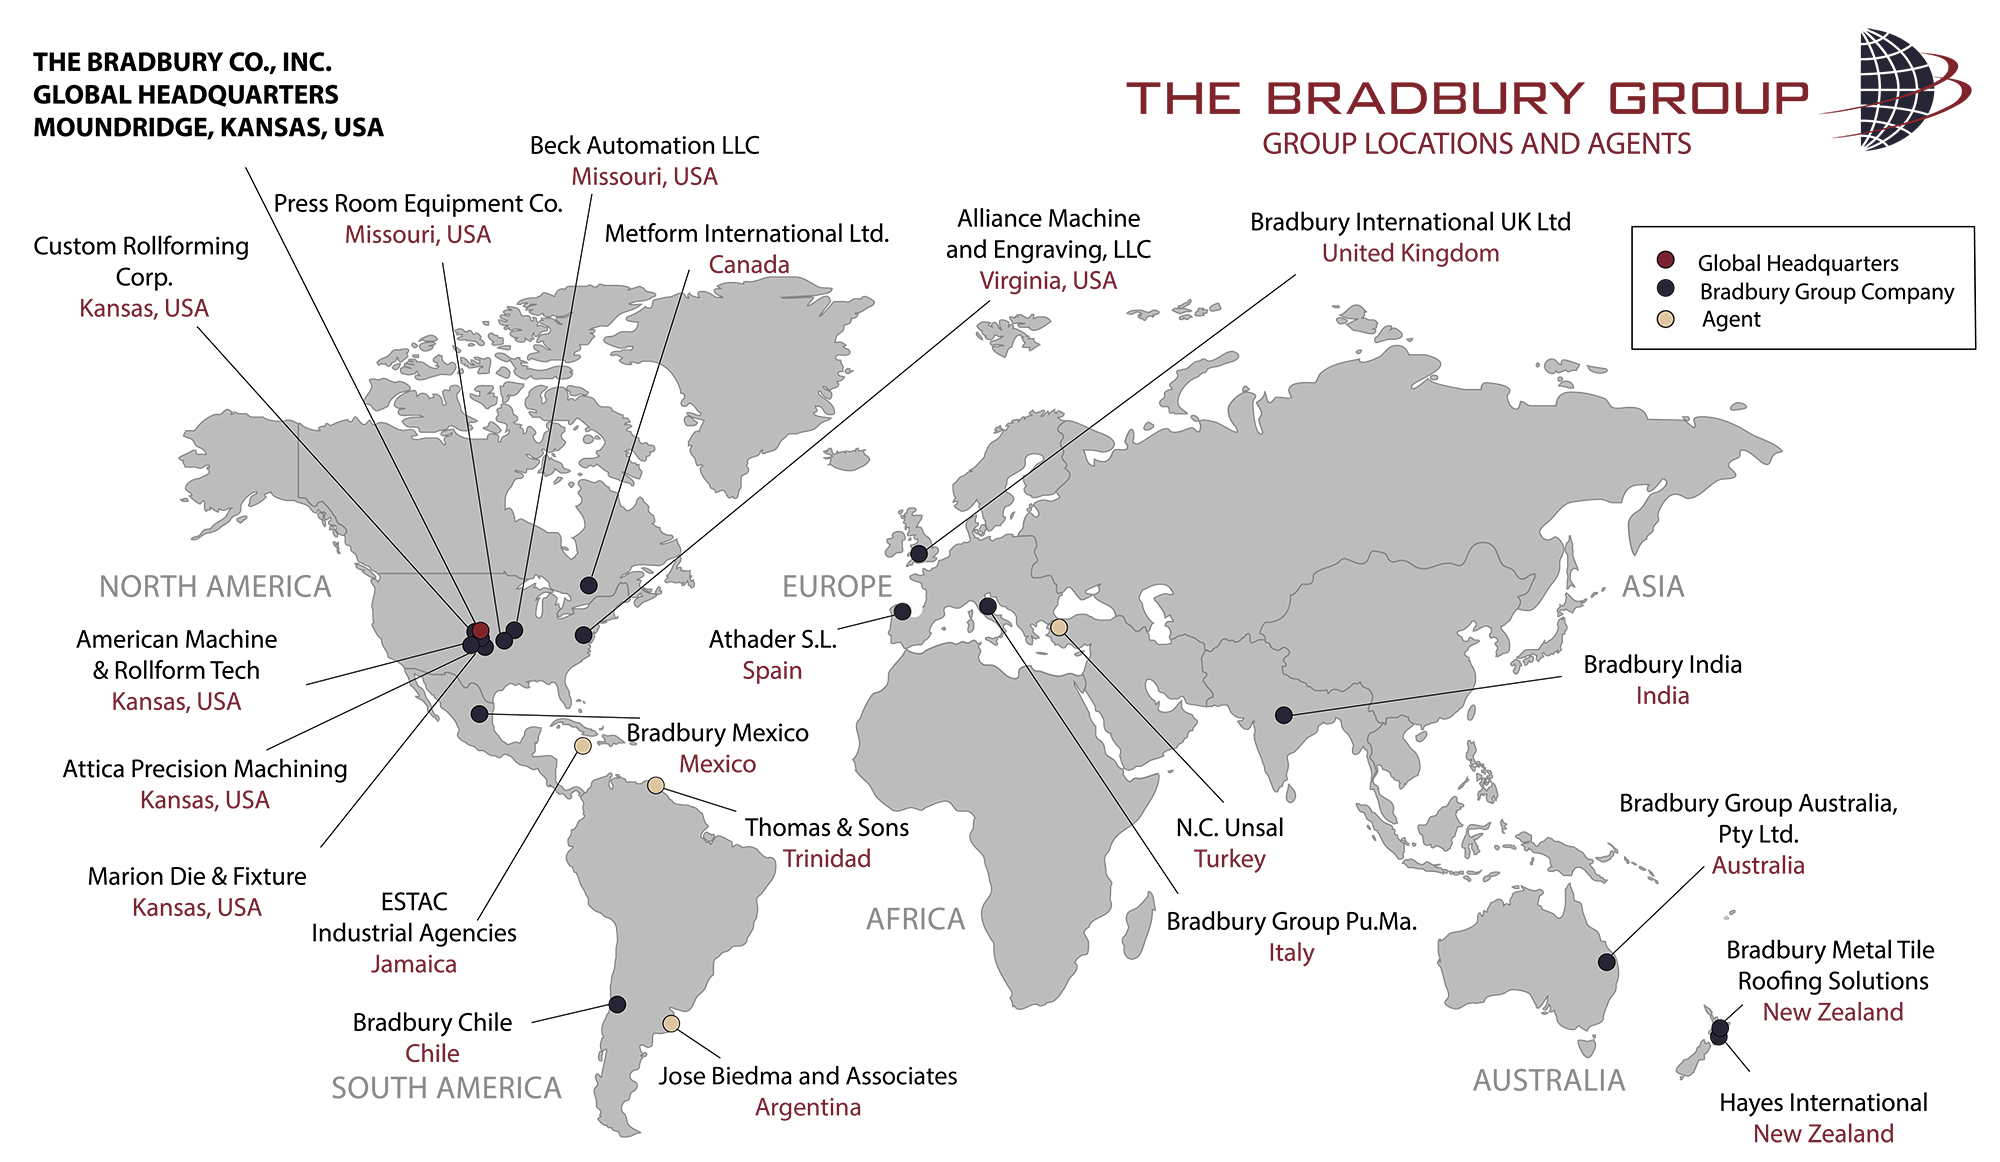 Bradbury Group Locations